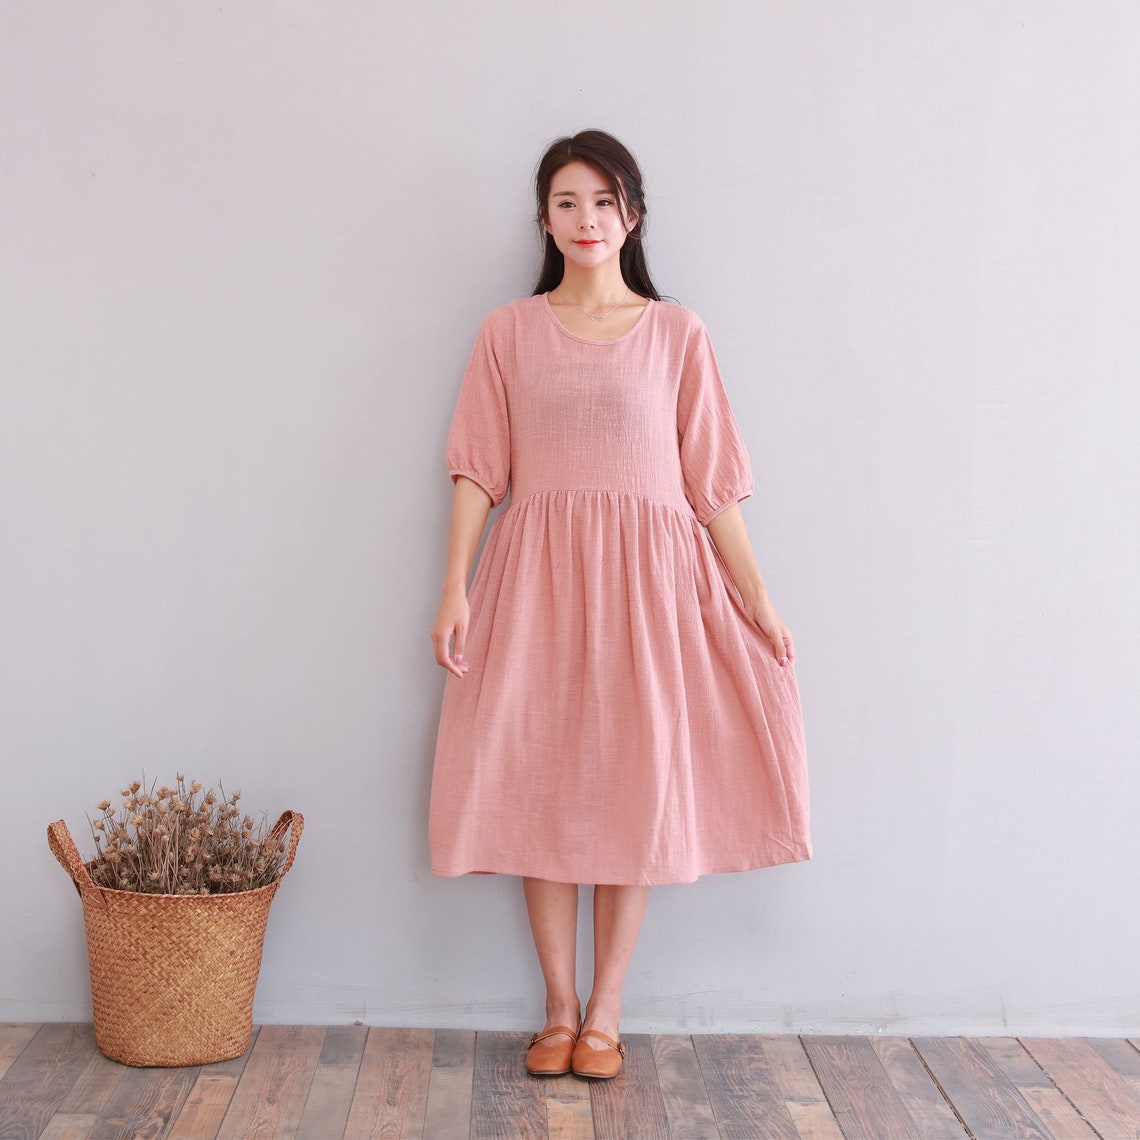 Clearance Dress Final Sale Soft Cotton Dress Summer Short | Etsy